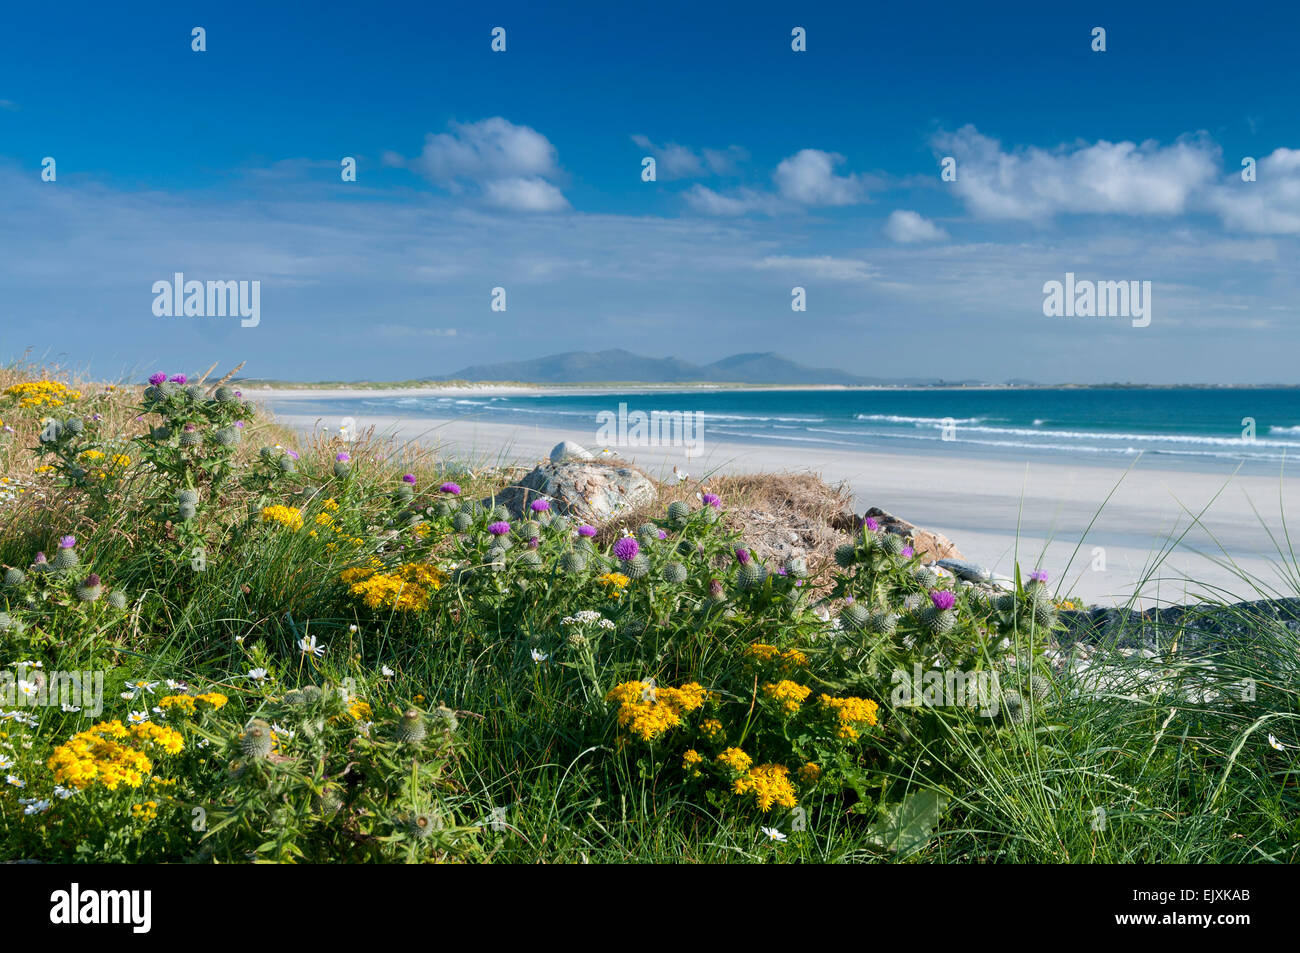 Vue de la plage à North Uist baleshare avec des fleurs sauvages et des dunes Banque D'Images